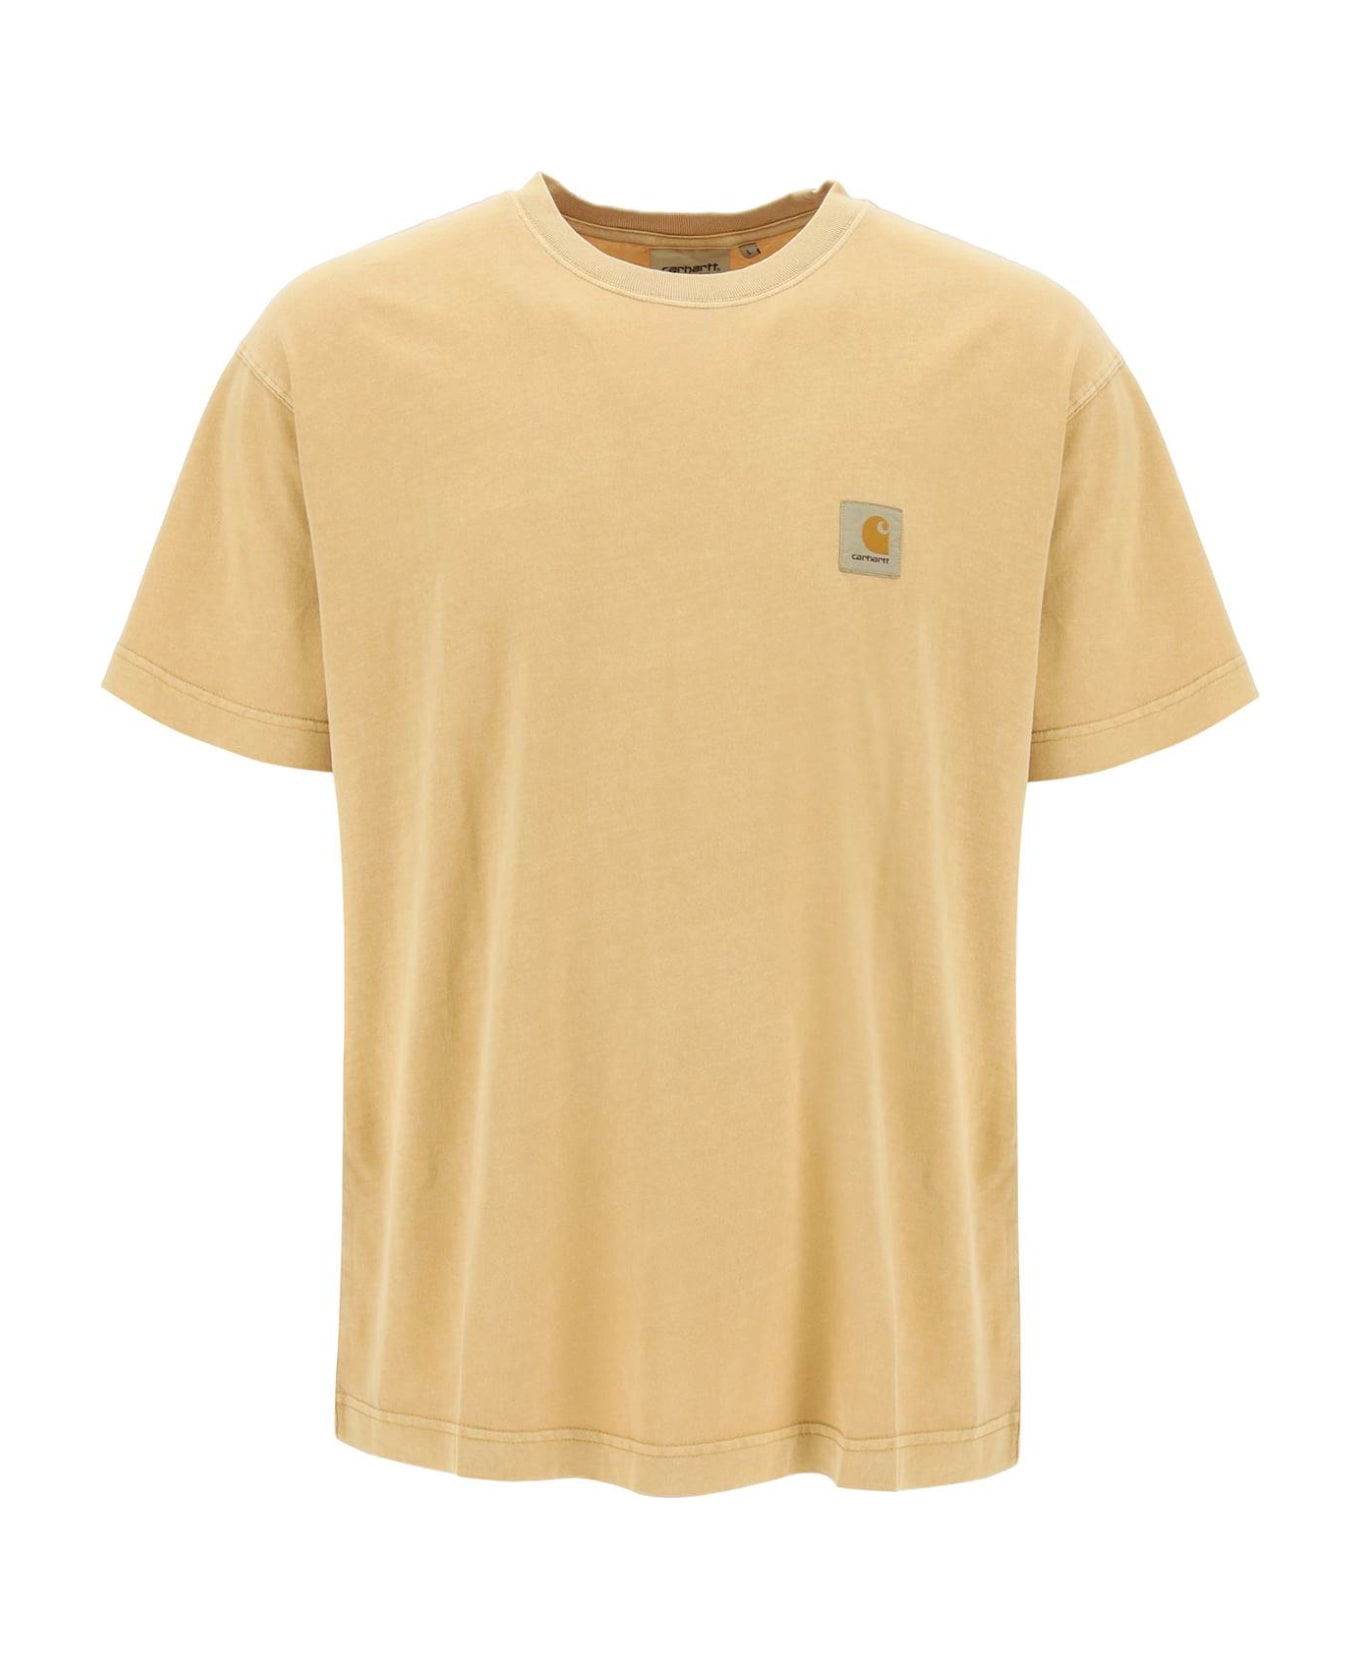 Carhartt Nelson T-shirt - Yh.gd Bourbon Garment Dyed